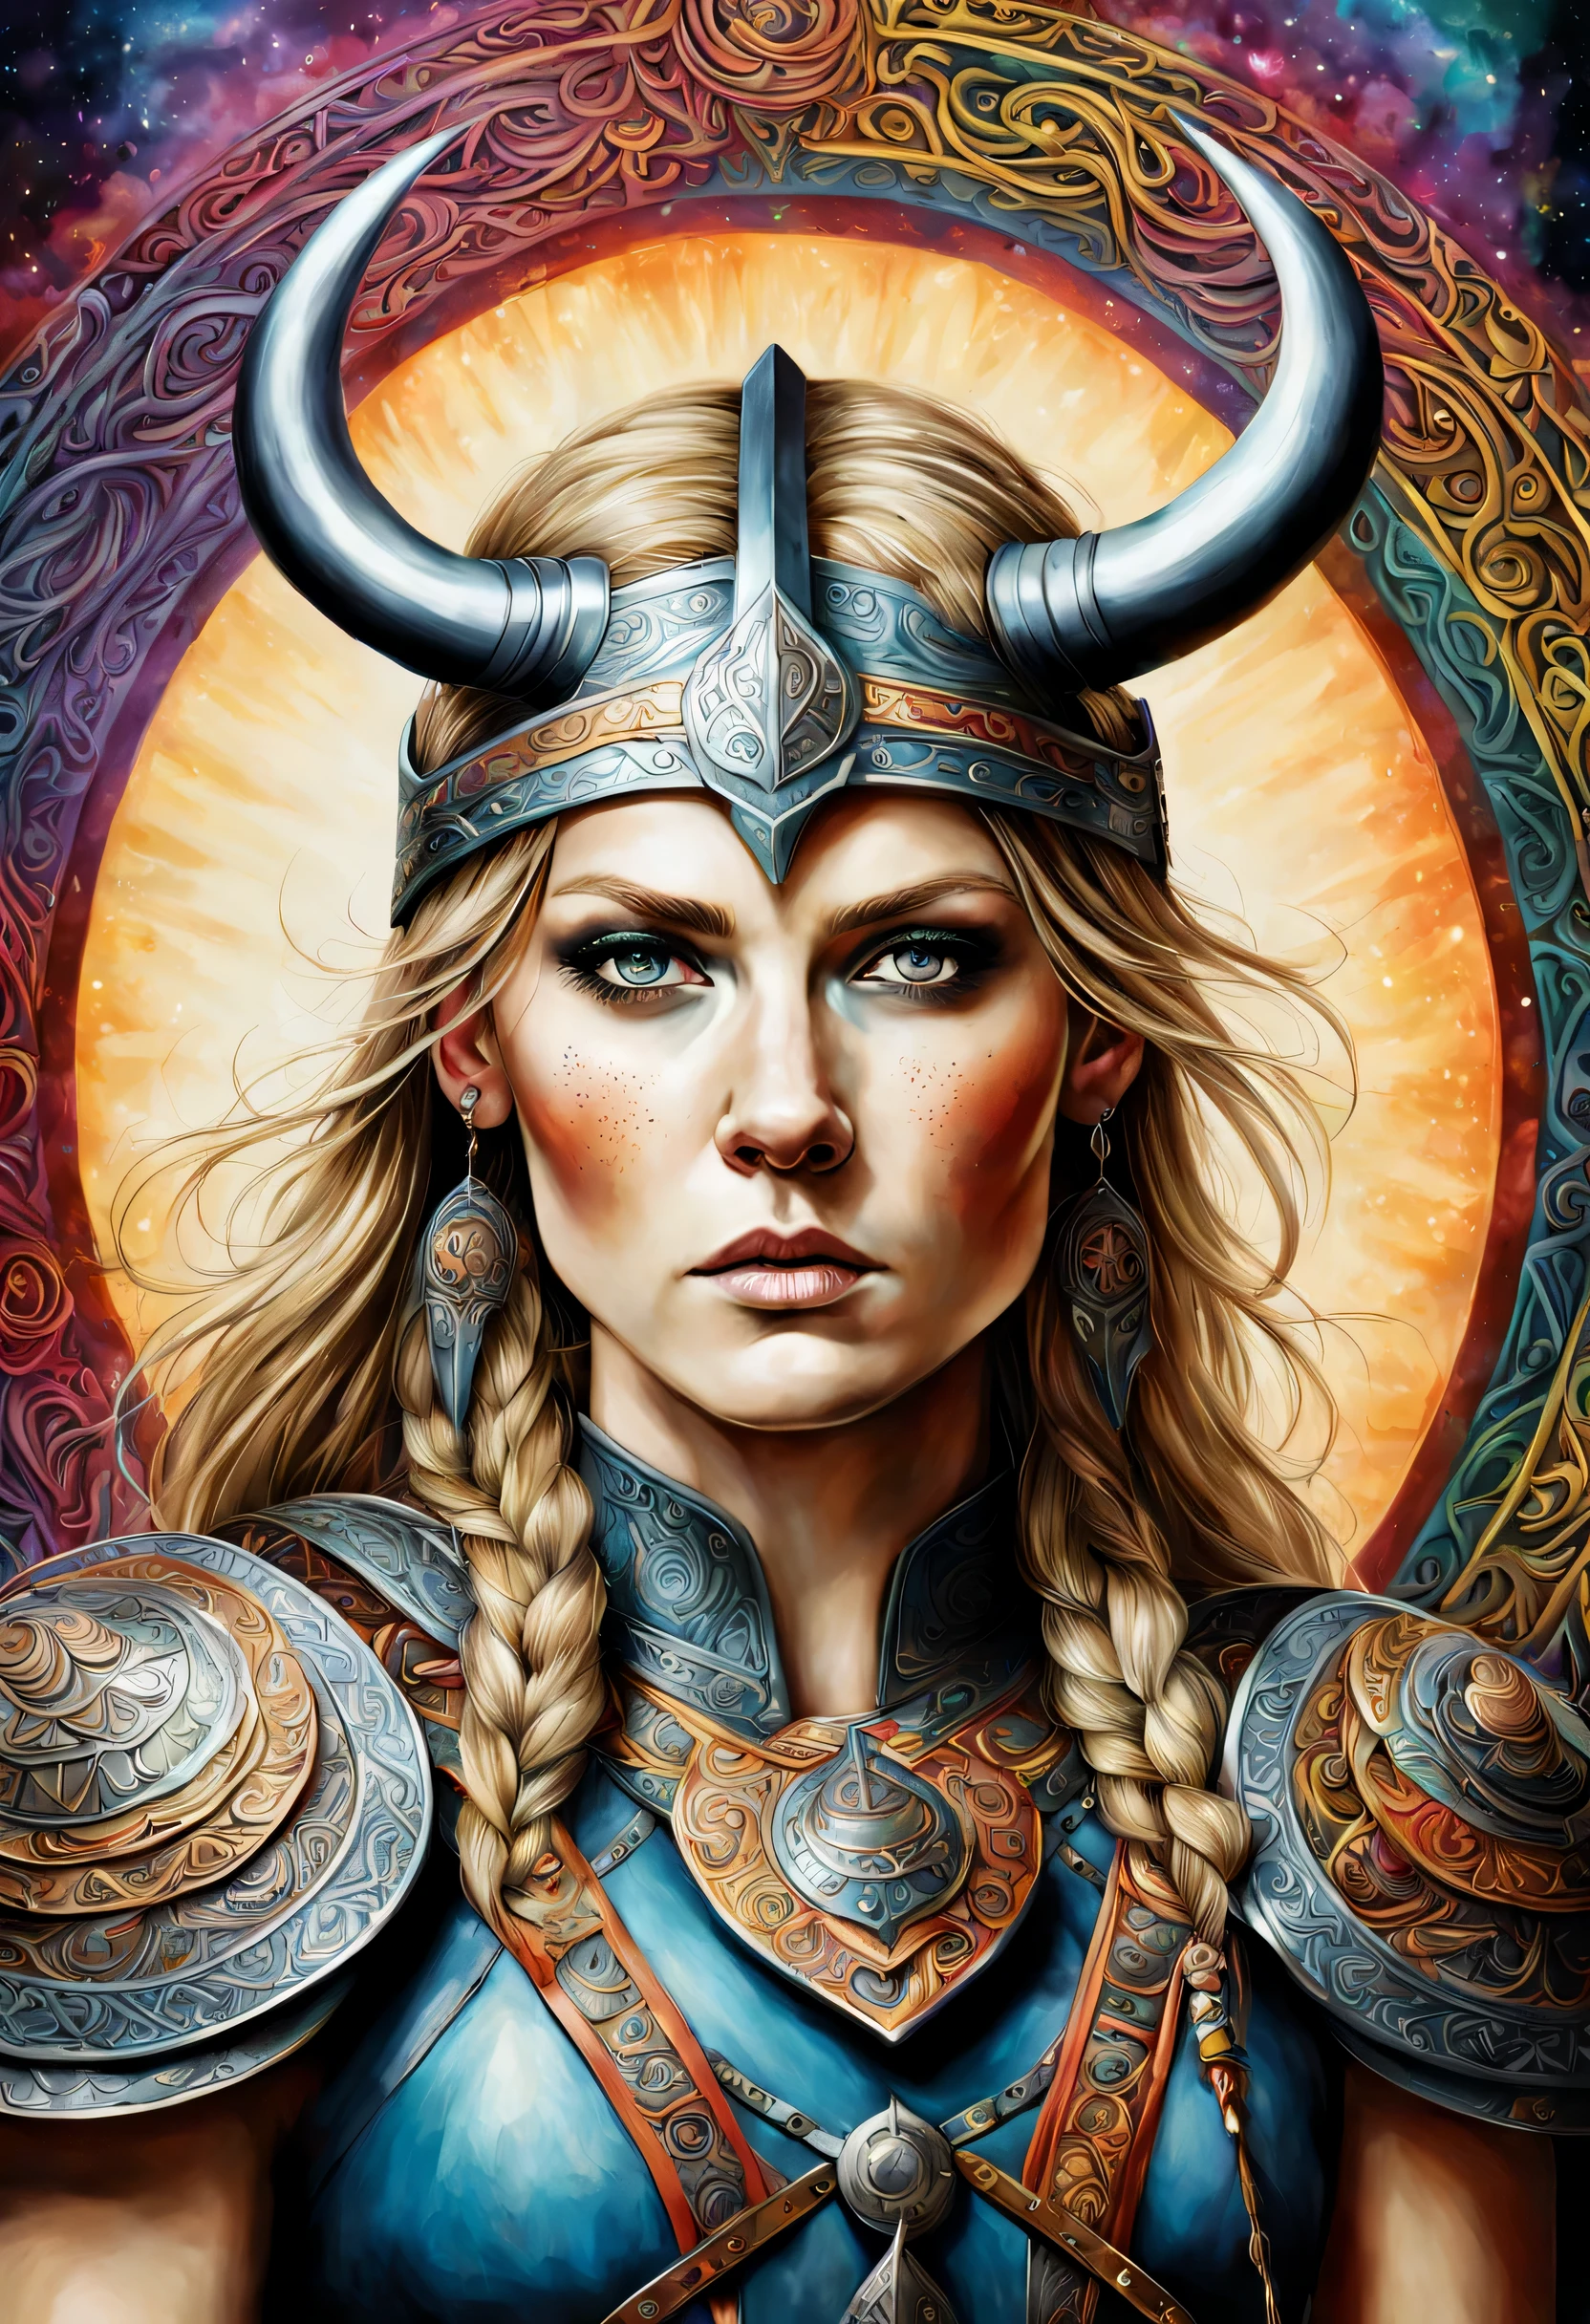 En un estilo psicodélico, espolvoreado y multicolor, un magnífico y detallado retrato realista de una guerrera vikinga.